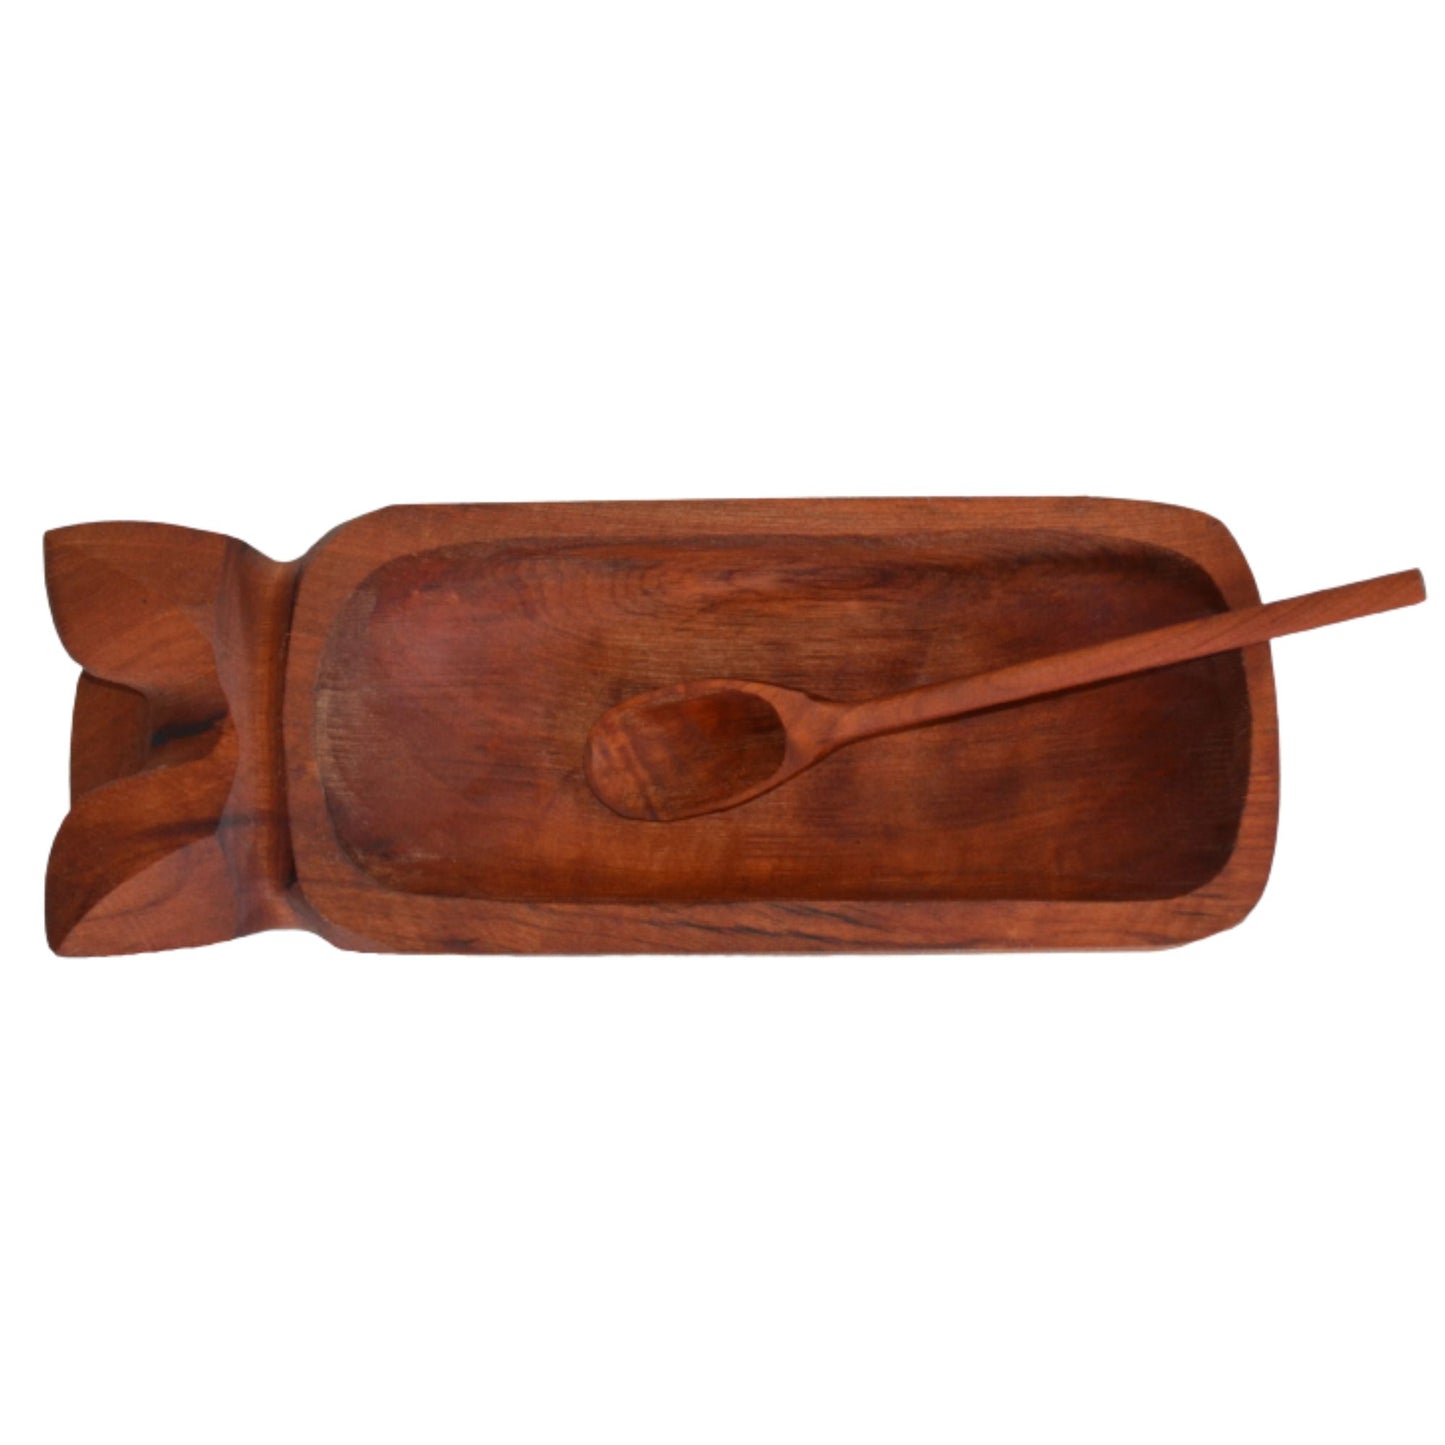 Chancho madera para pebre 27x10,5x5,5 cm con cuchara 20 cm raulí